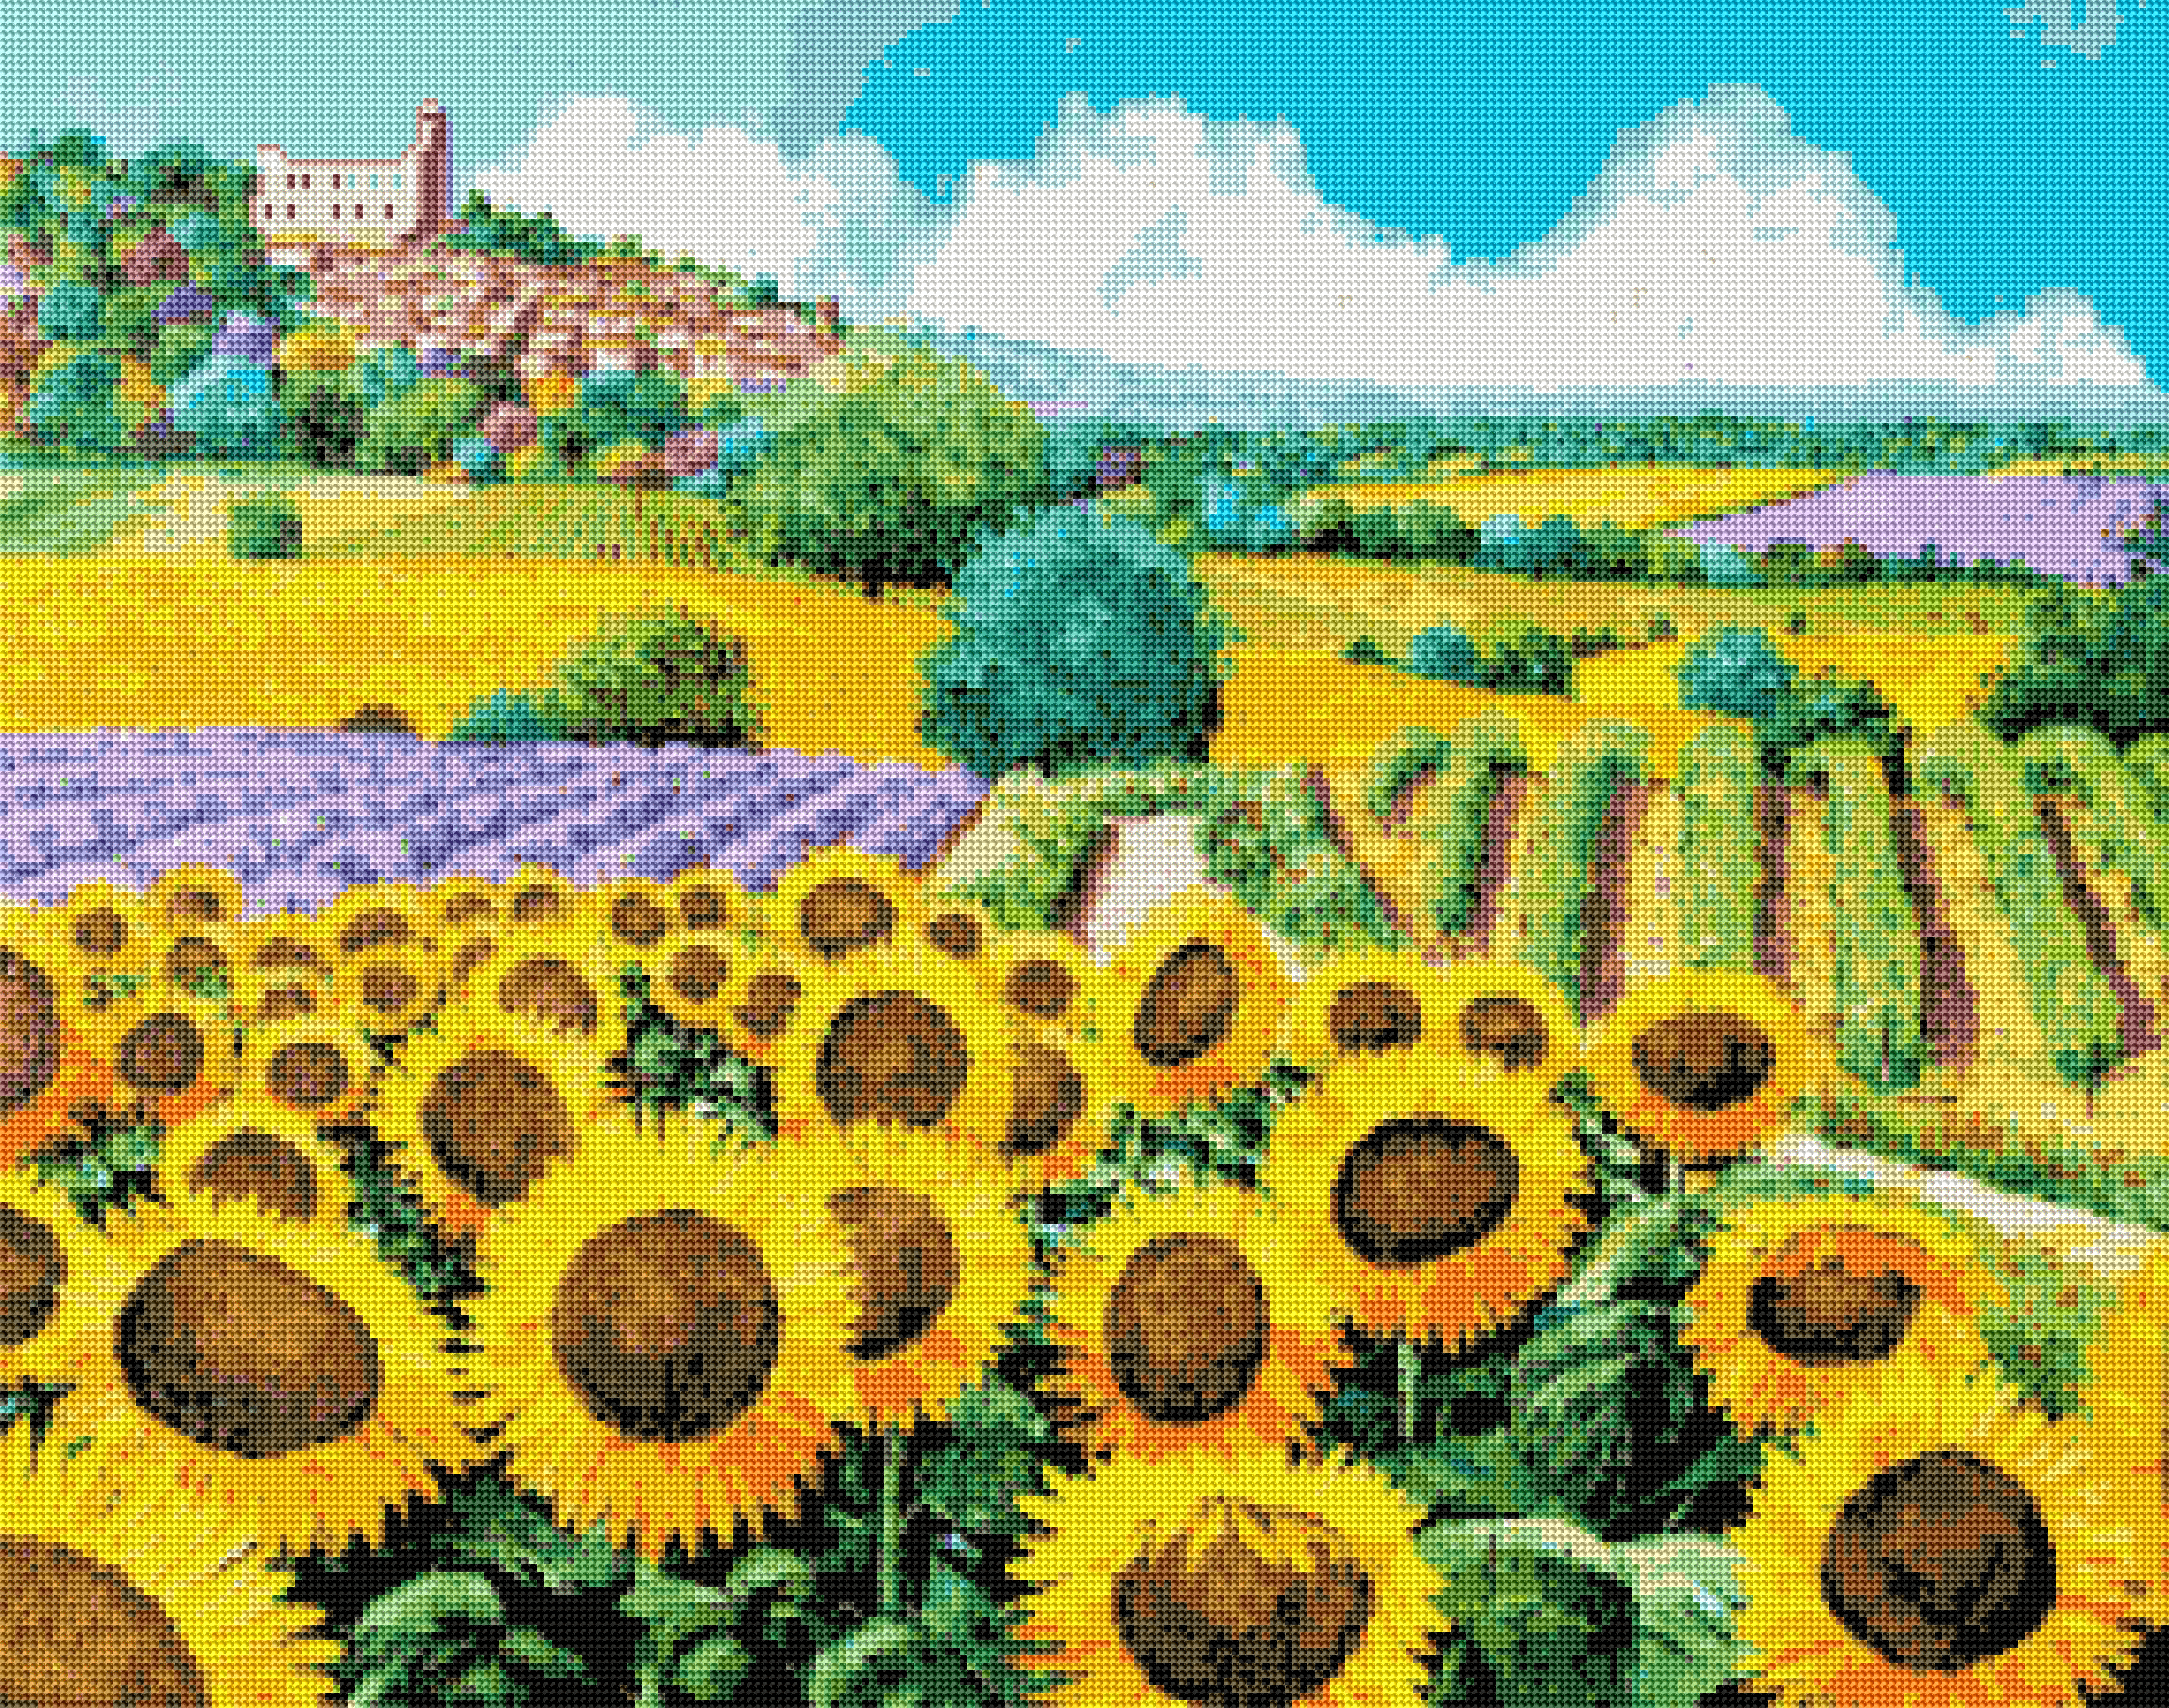 Weinberge und Sonnenblumen